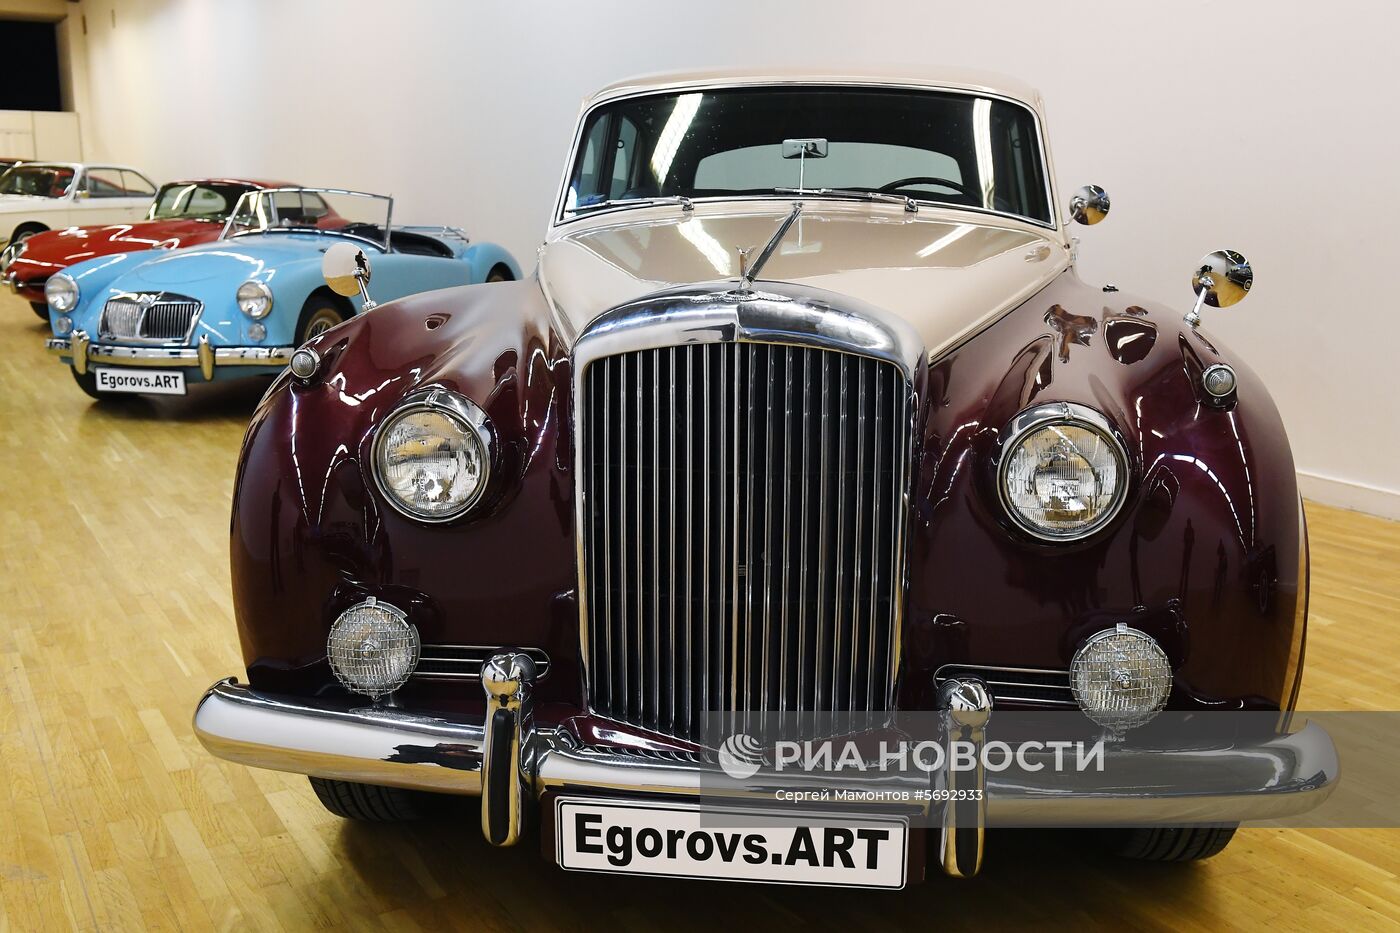 Выставка "Редкие автомобили" в ЦДХ